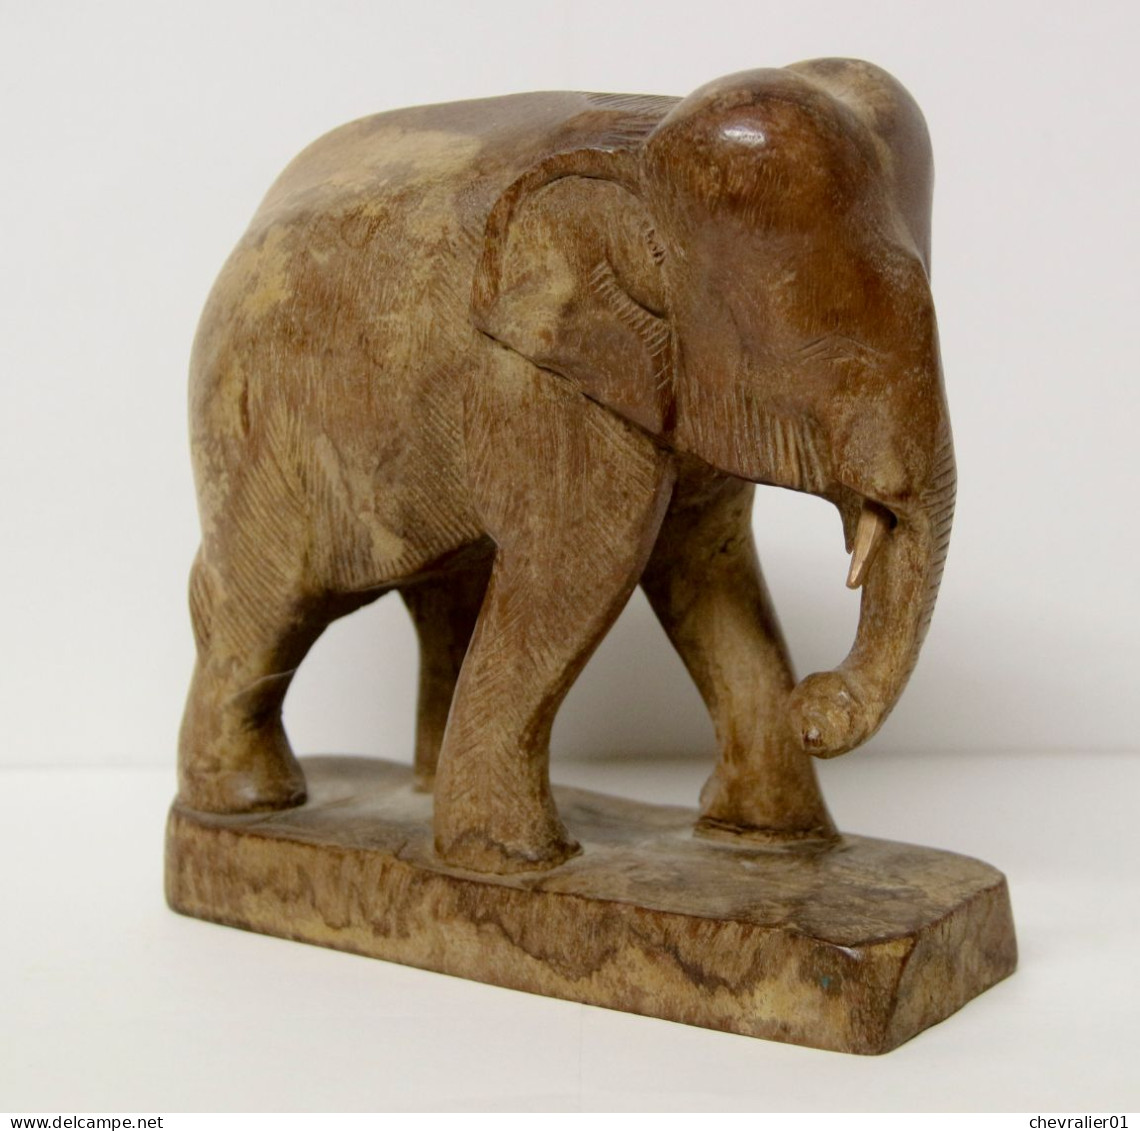 Art-antiquité_sculpture En Bois_Statuette D'éléphant Asiatique - Madera